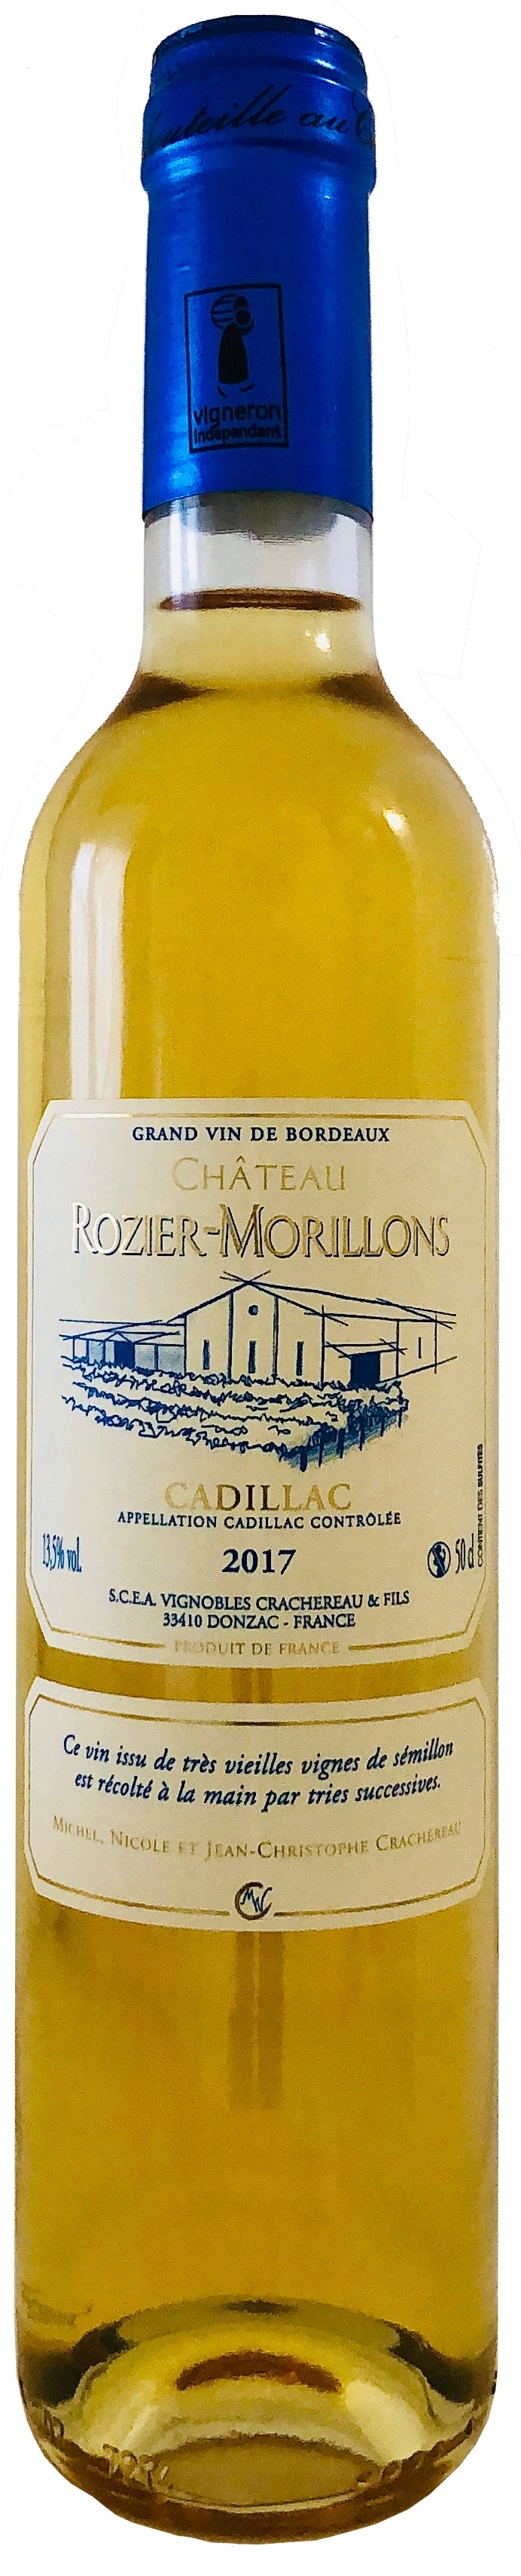 Château ROZIER-MORILLONS AOC CADILLAC – 2017 – 50 cL – Agriculture Raisonnée